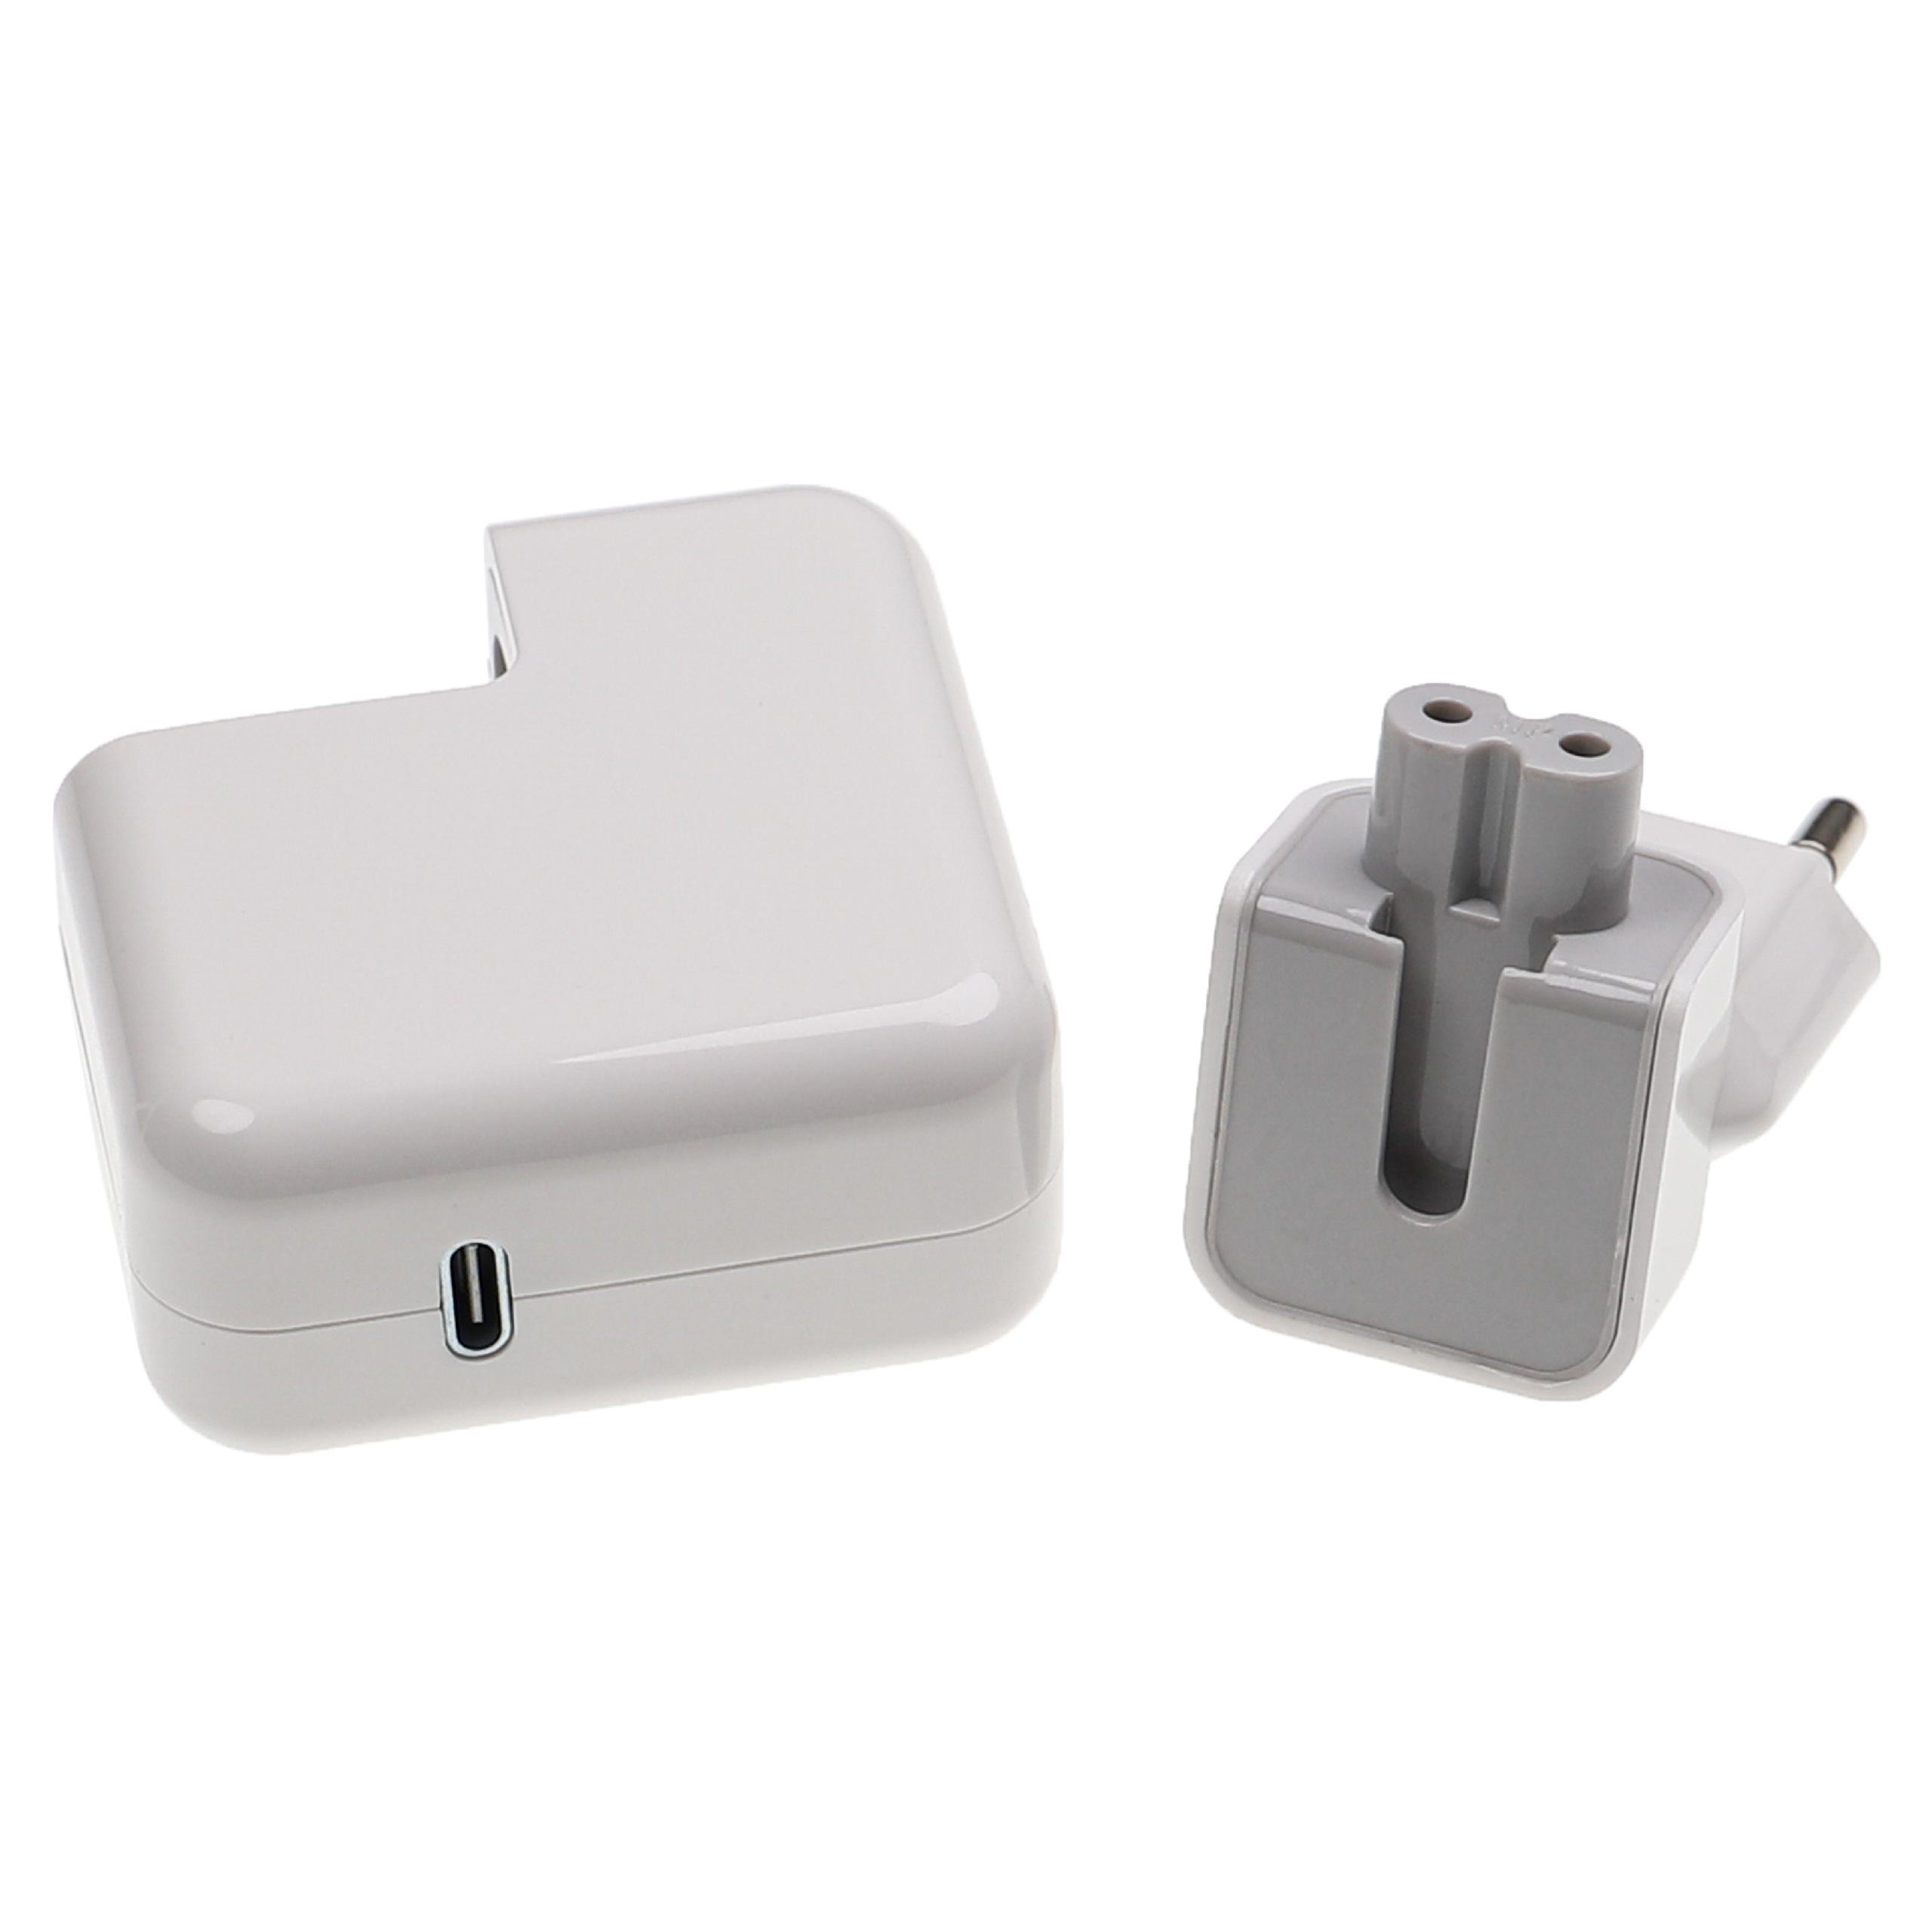 Adaptador USB C para smartphones, móviles, tablets - Cargador USB, adaptador15 / 9 / 5 V